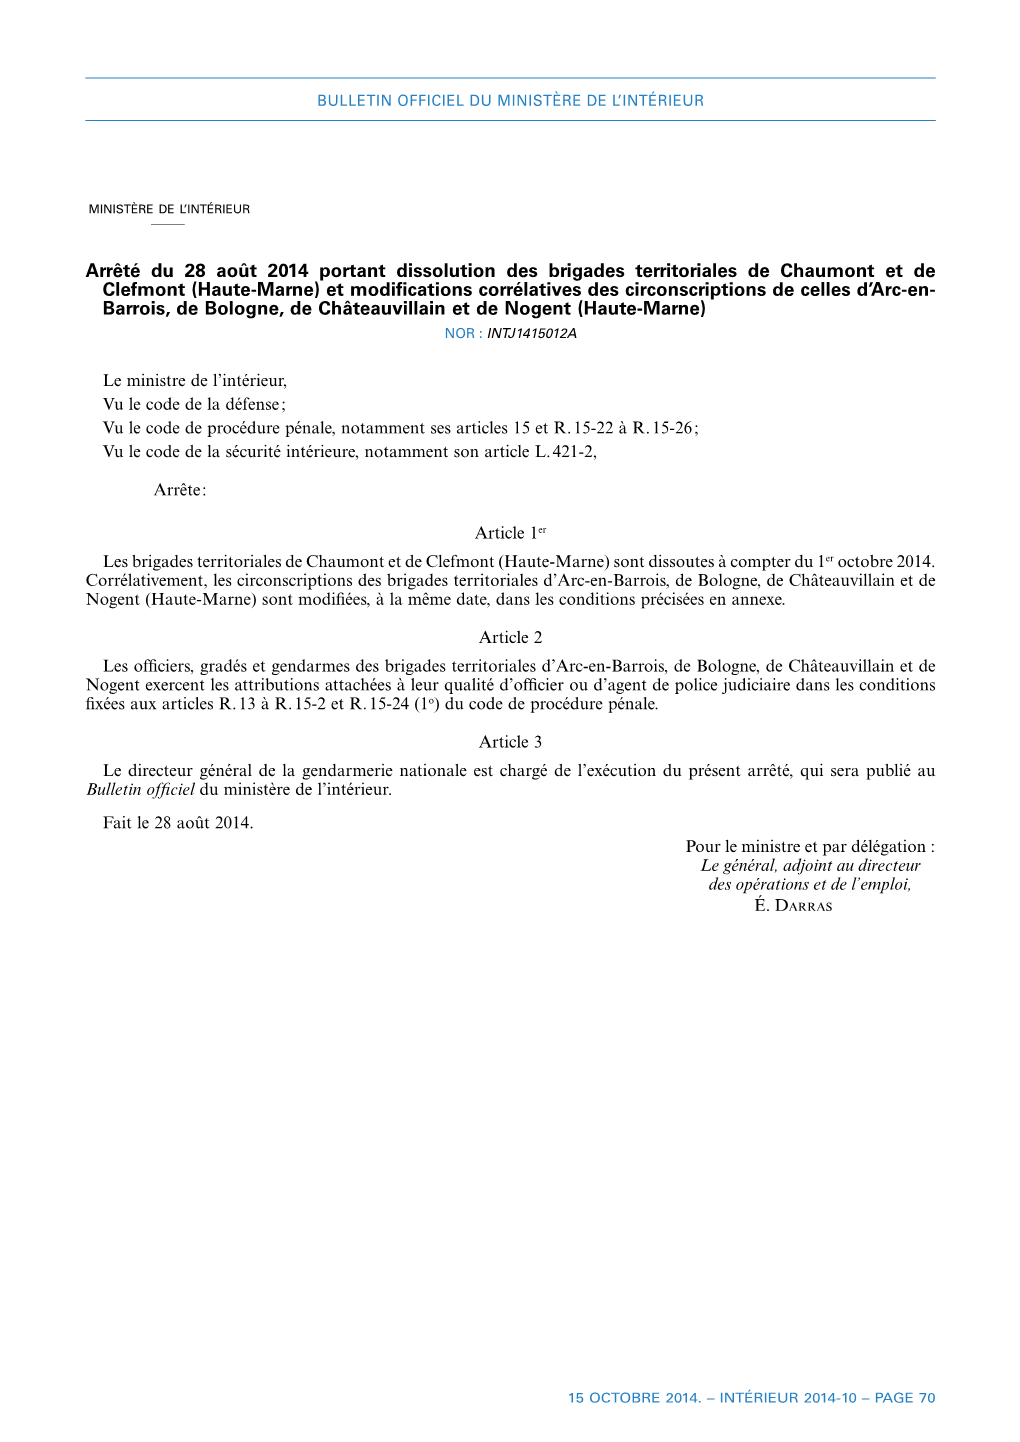 Arrêté Du 28 Août 2014 Portant Dissolution Des Brigades Territoriales De Chaumont Et De Clefmont